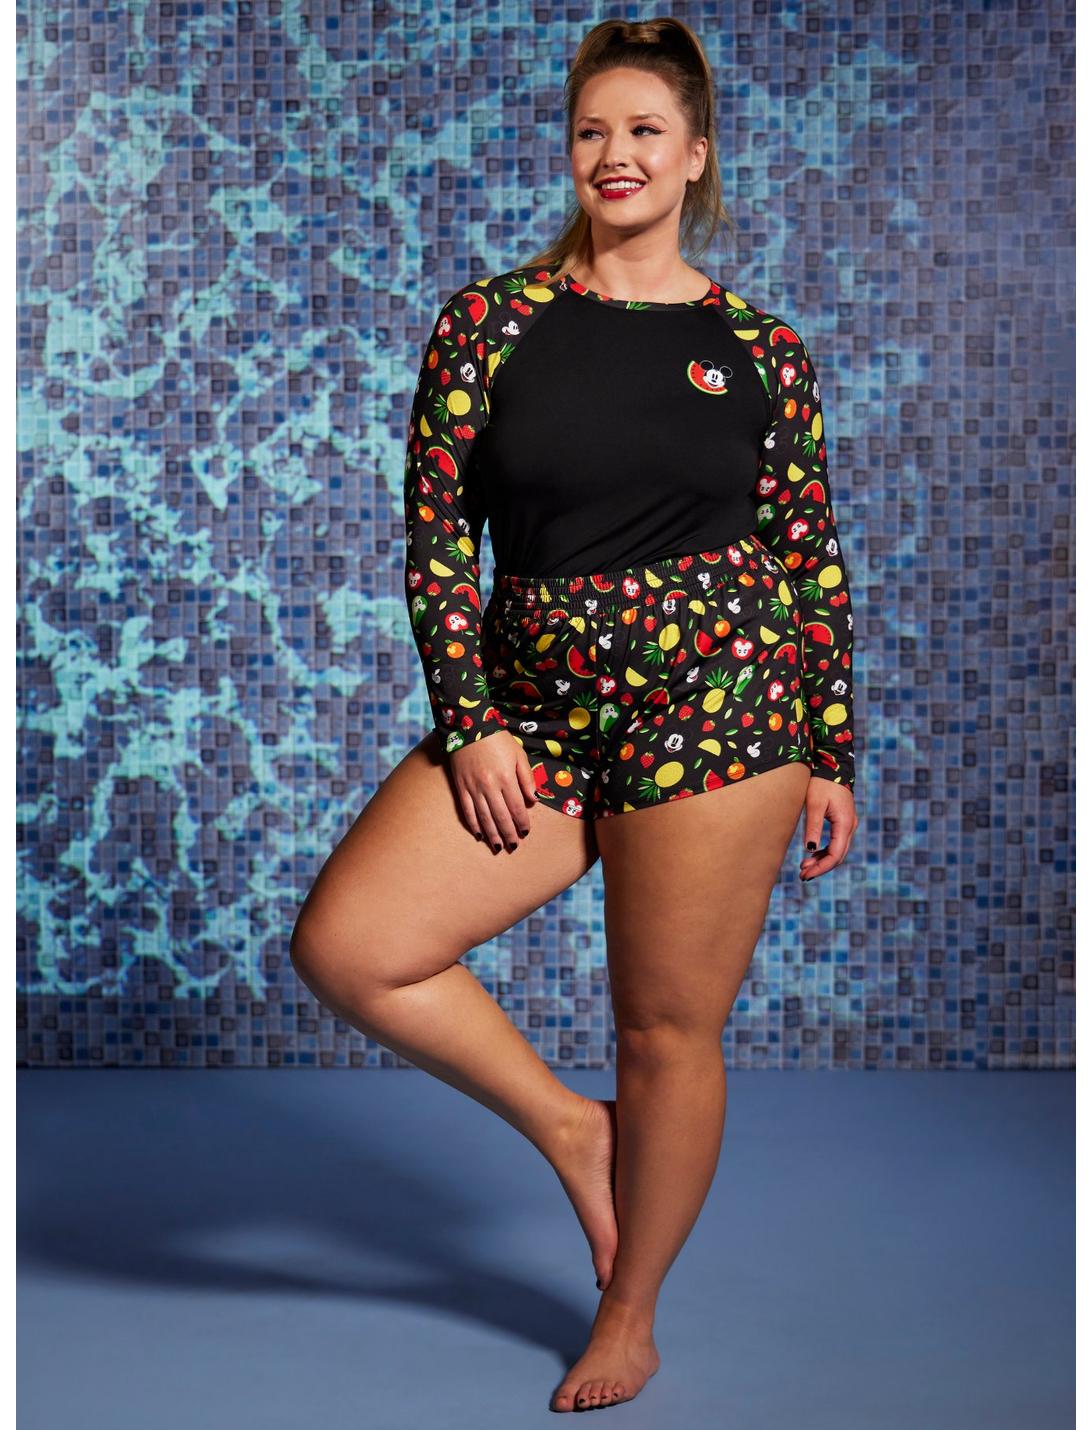 Disney Mickey Mouse Fruit Girls Boardshorts Plus Size, MULTI, hi-res